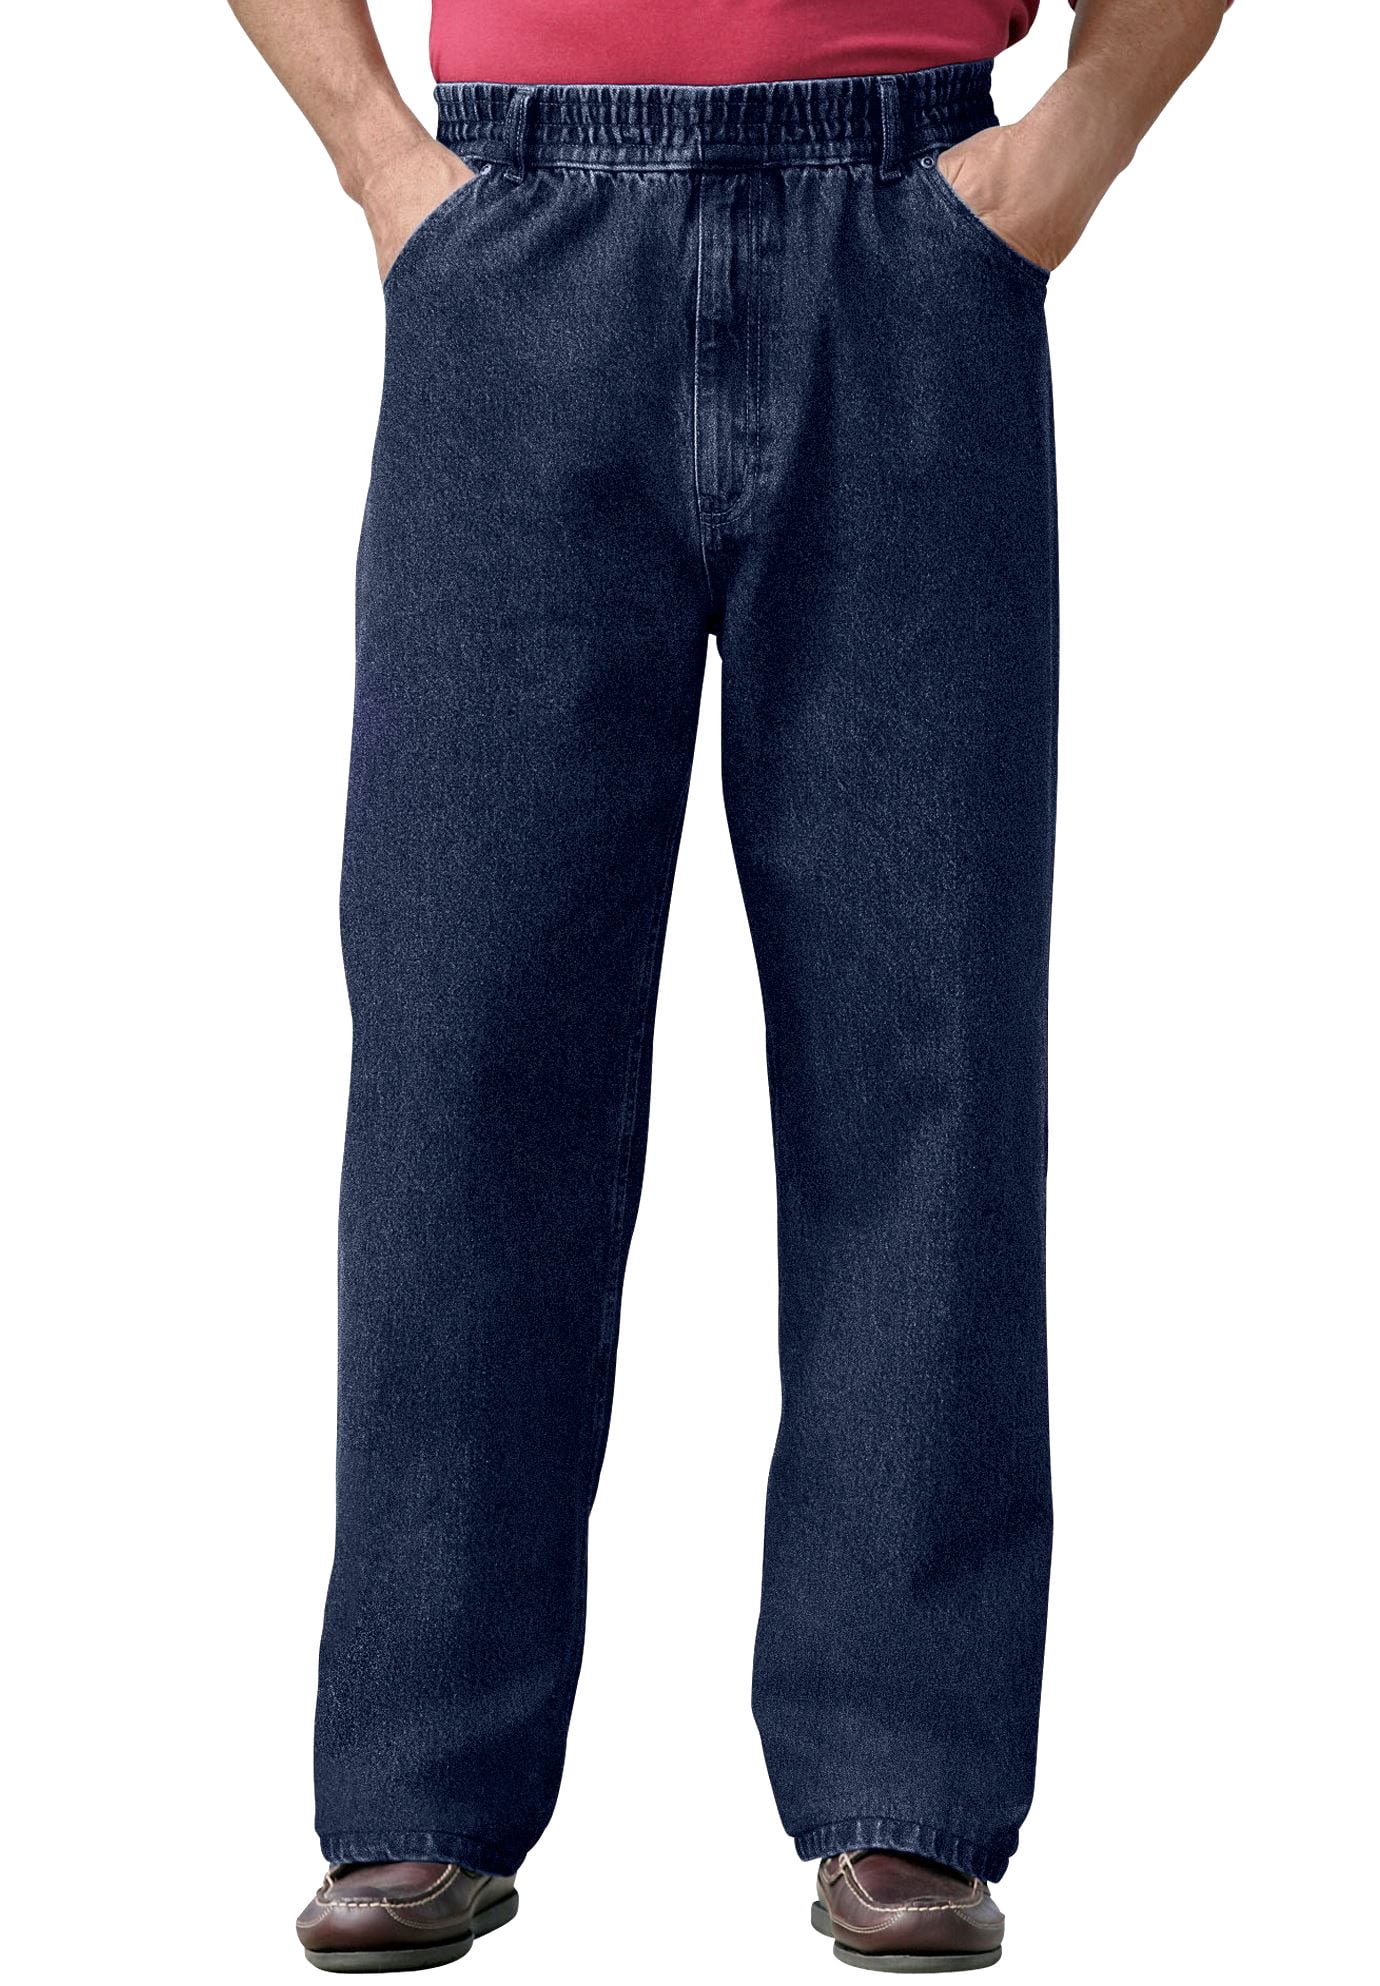 Men's & Loose Fit Comfort Waist Jeans -